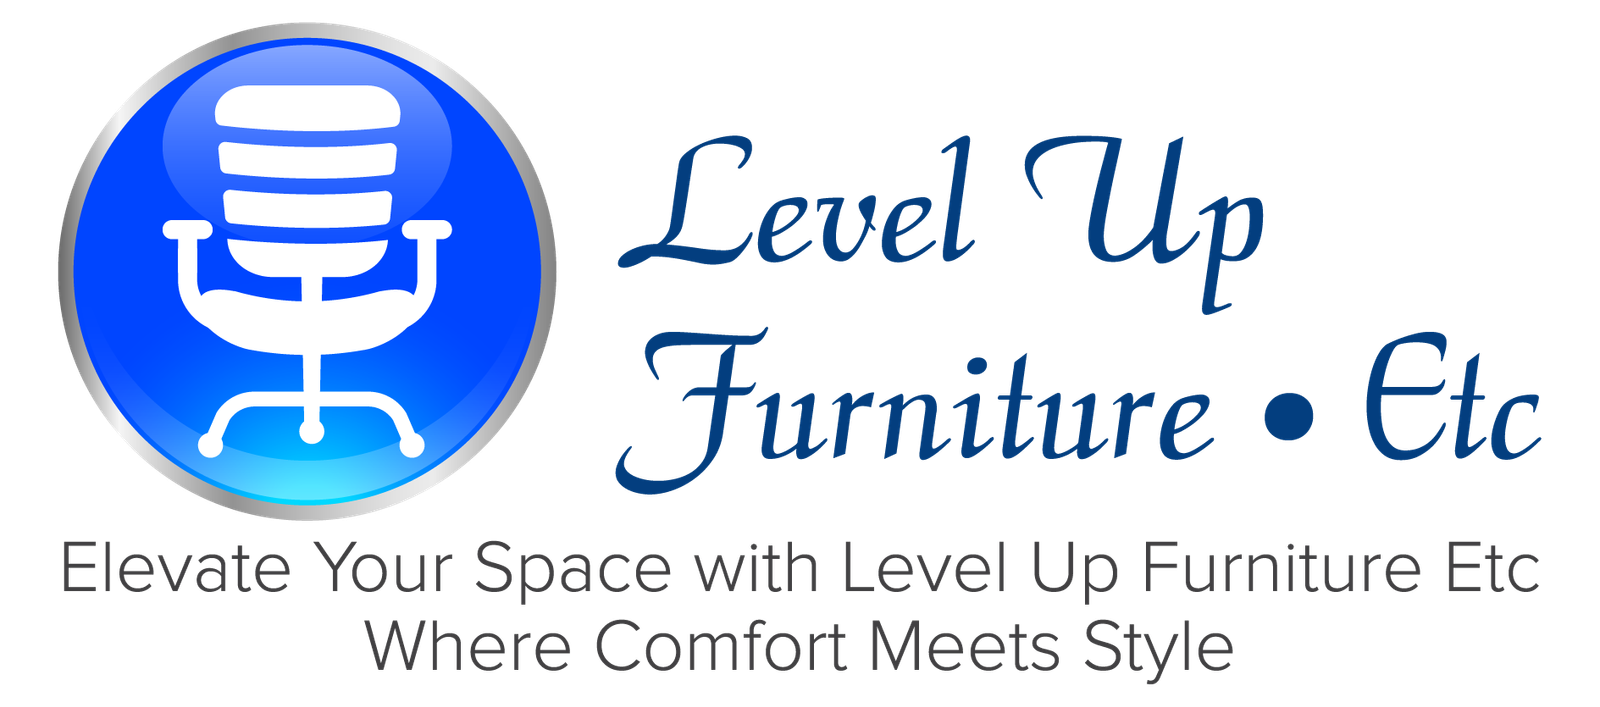 Level Up Furniture Etc